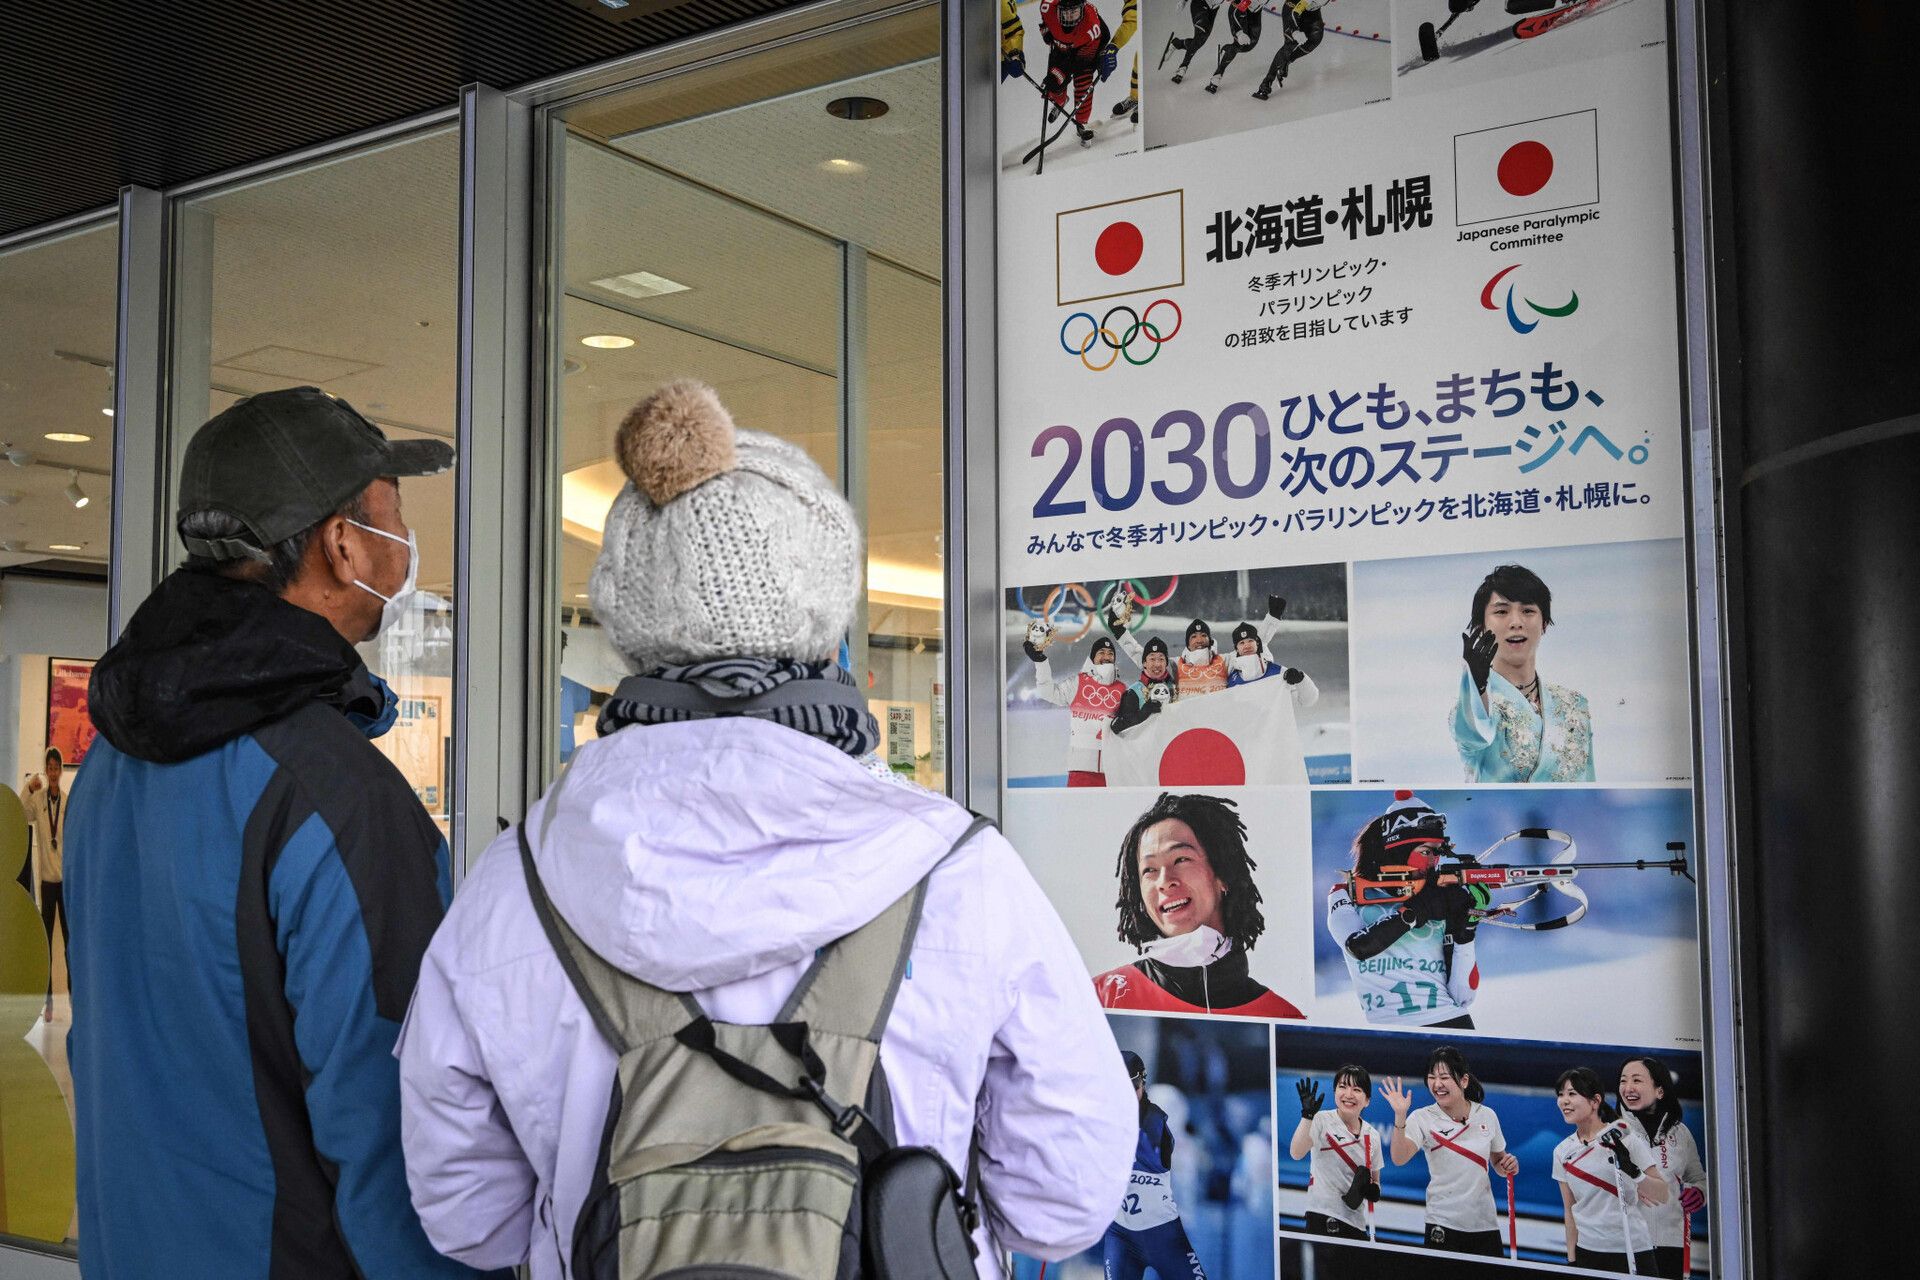 Referendum Sapporo 2030